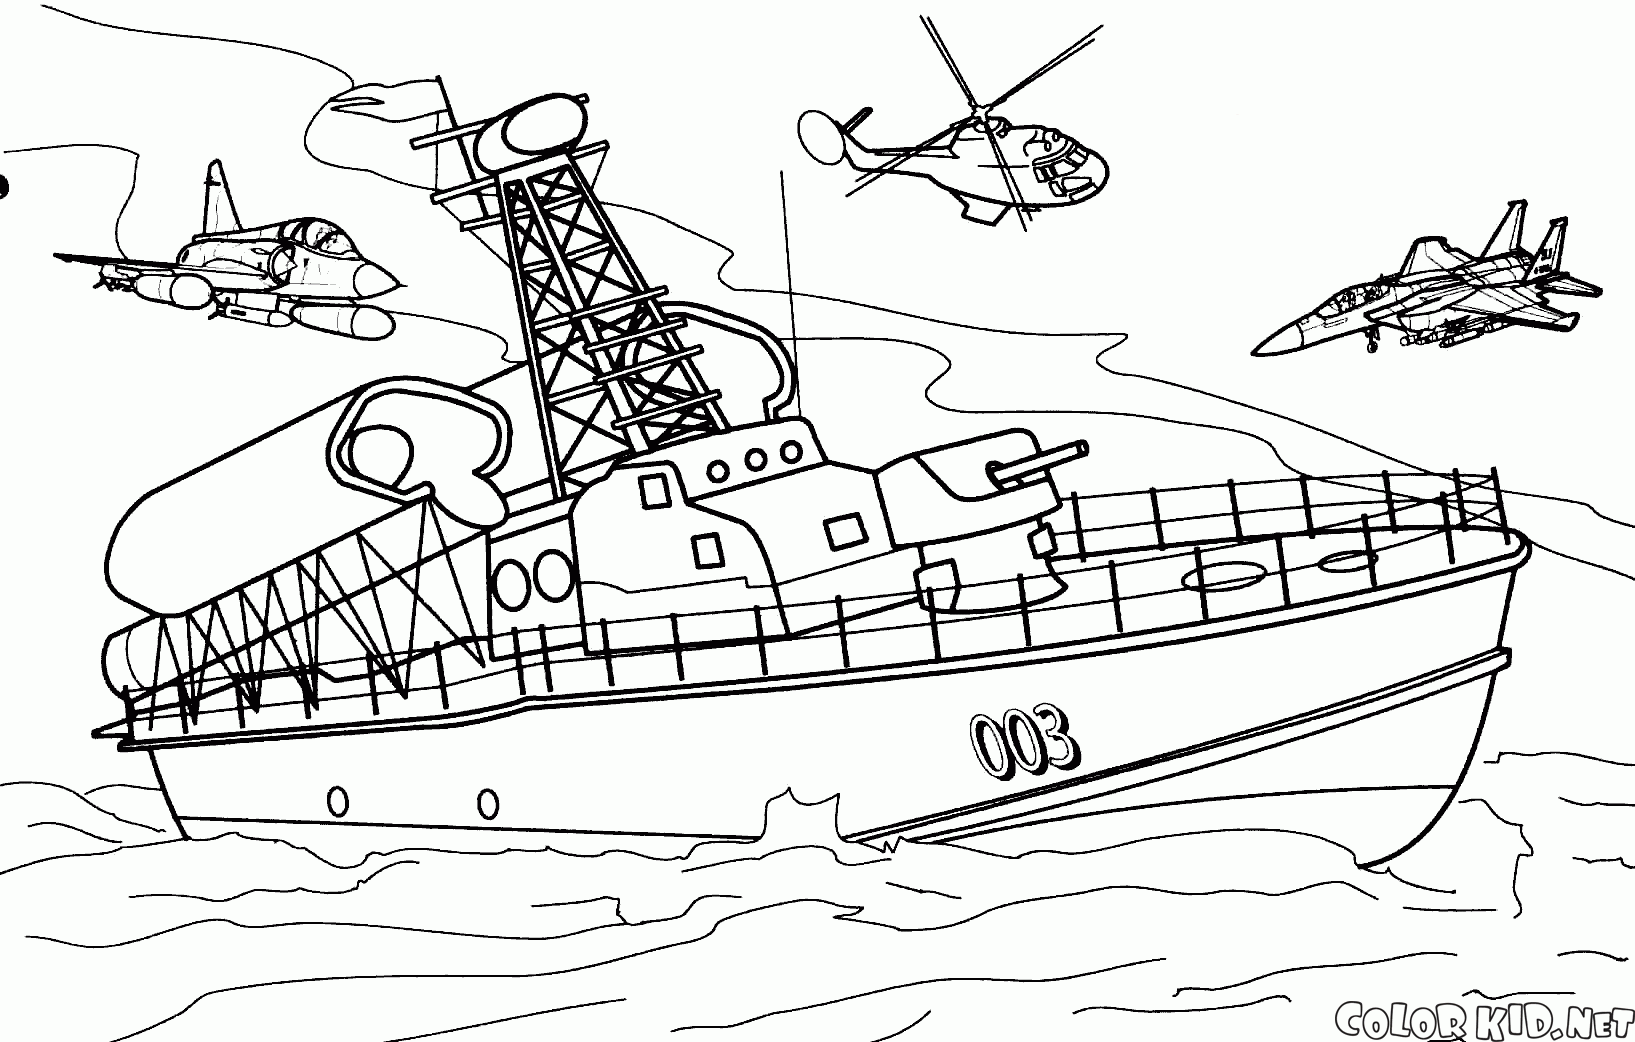 Barca missile